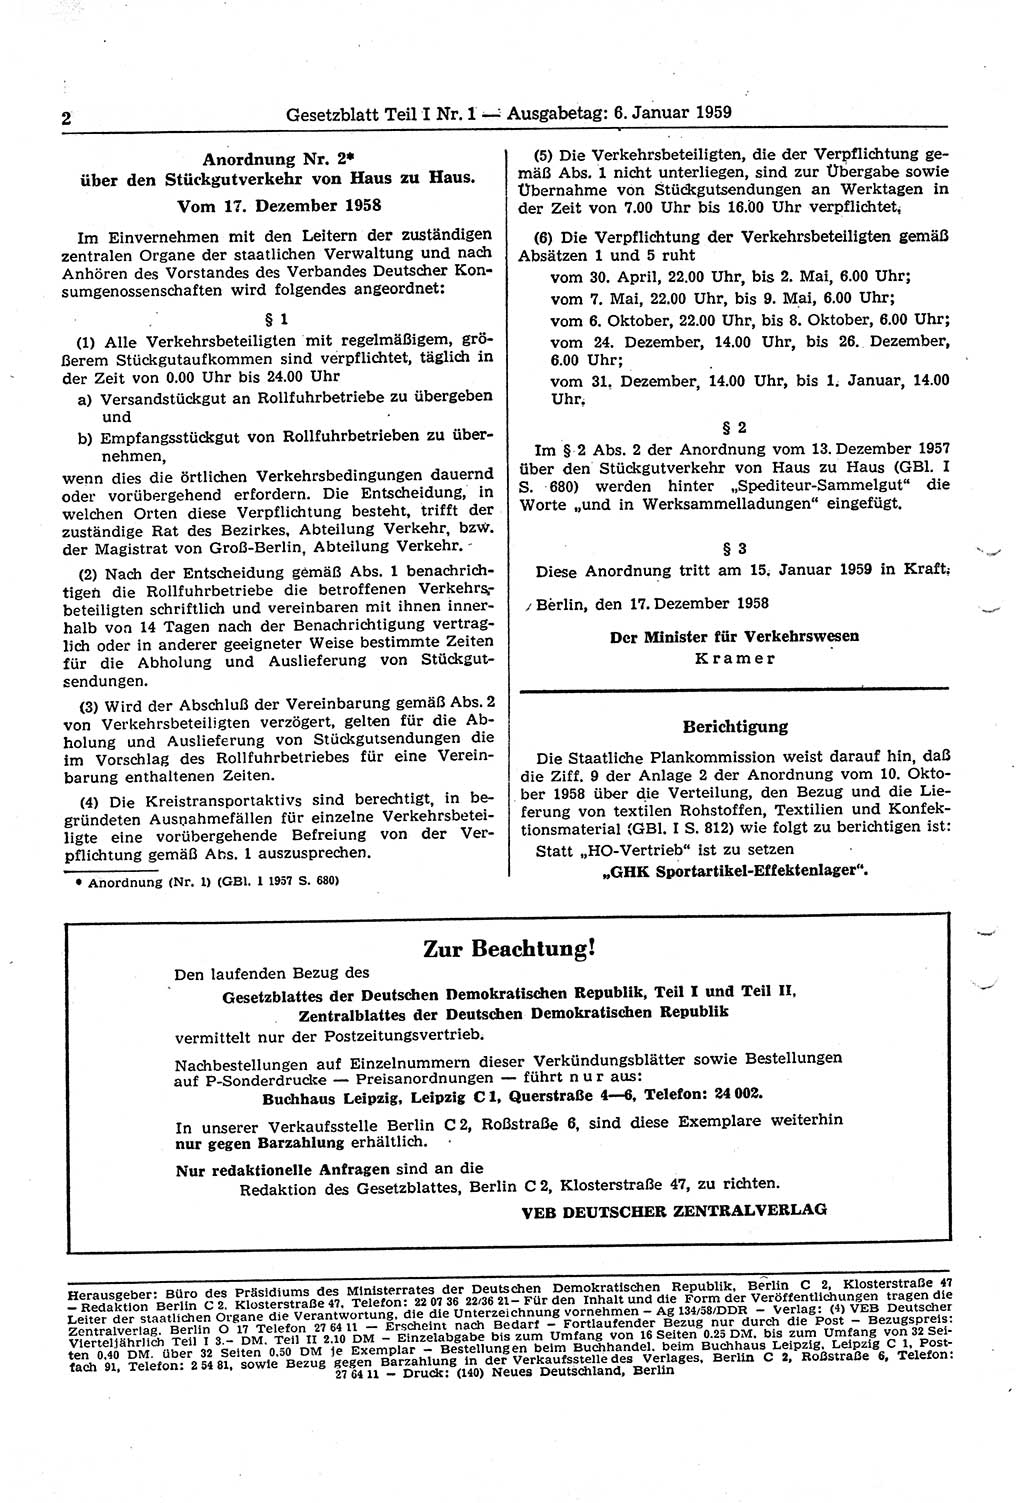 Gesetzblatt (GBl.) der Deutschen Demokratischen Republik (DDR) Teil Ⅰ 1959, Seite 2 (GBl. DDR Ⅰ 1959, S. 2)